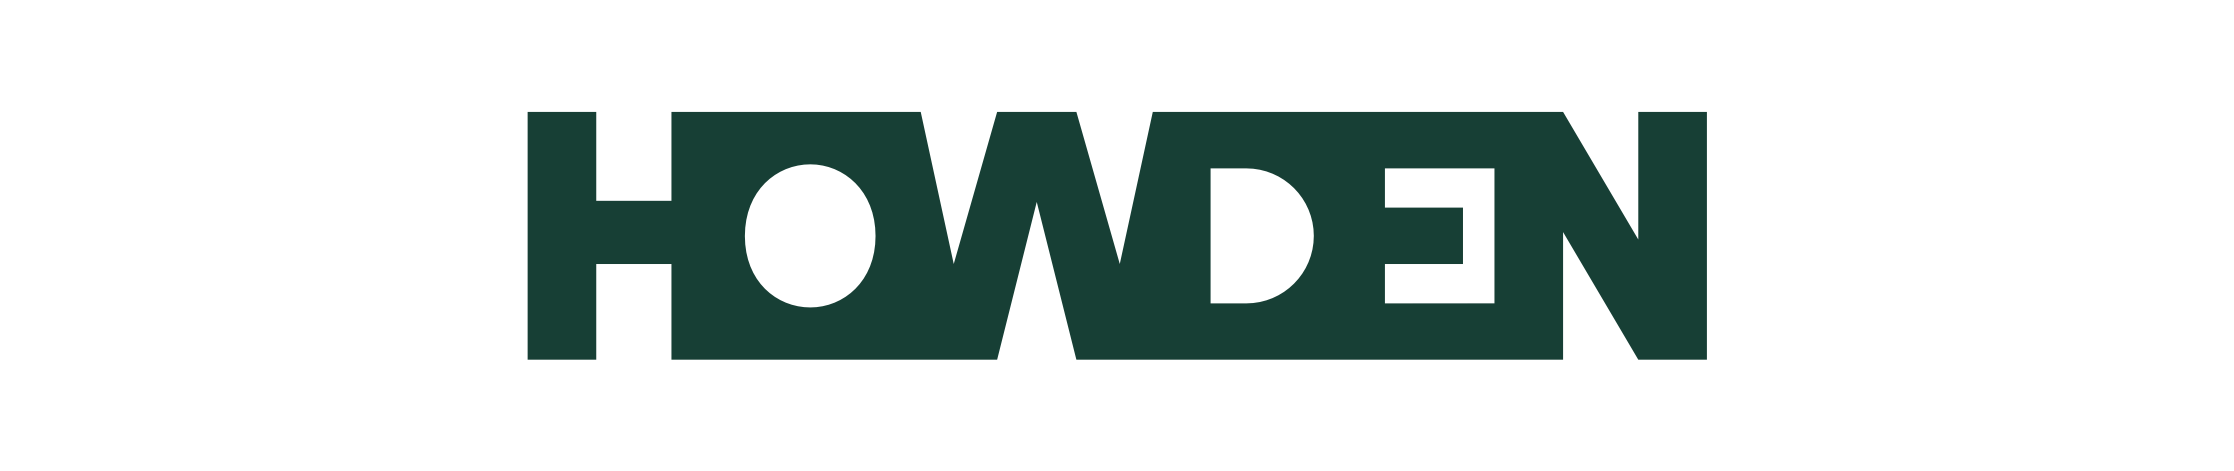 howden logo - deep green